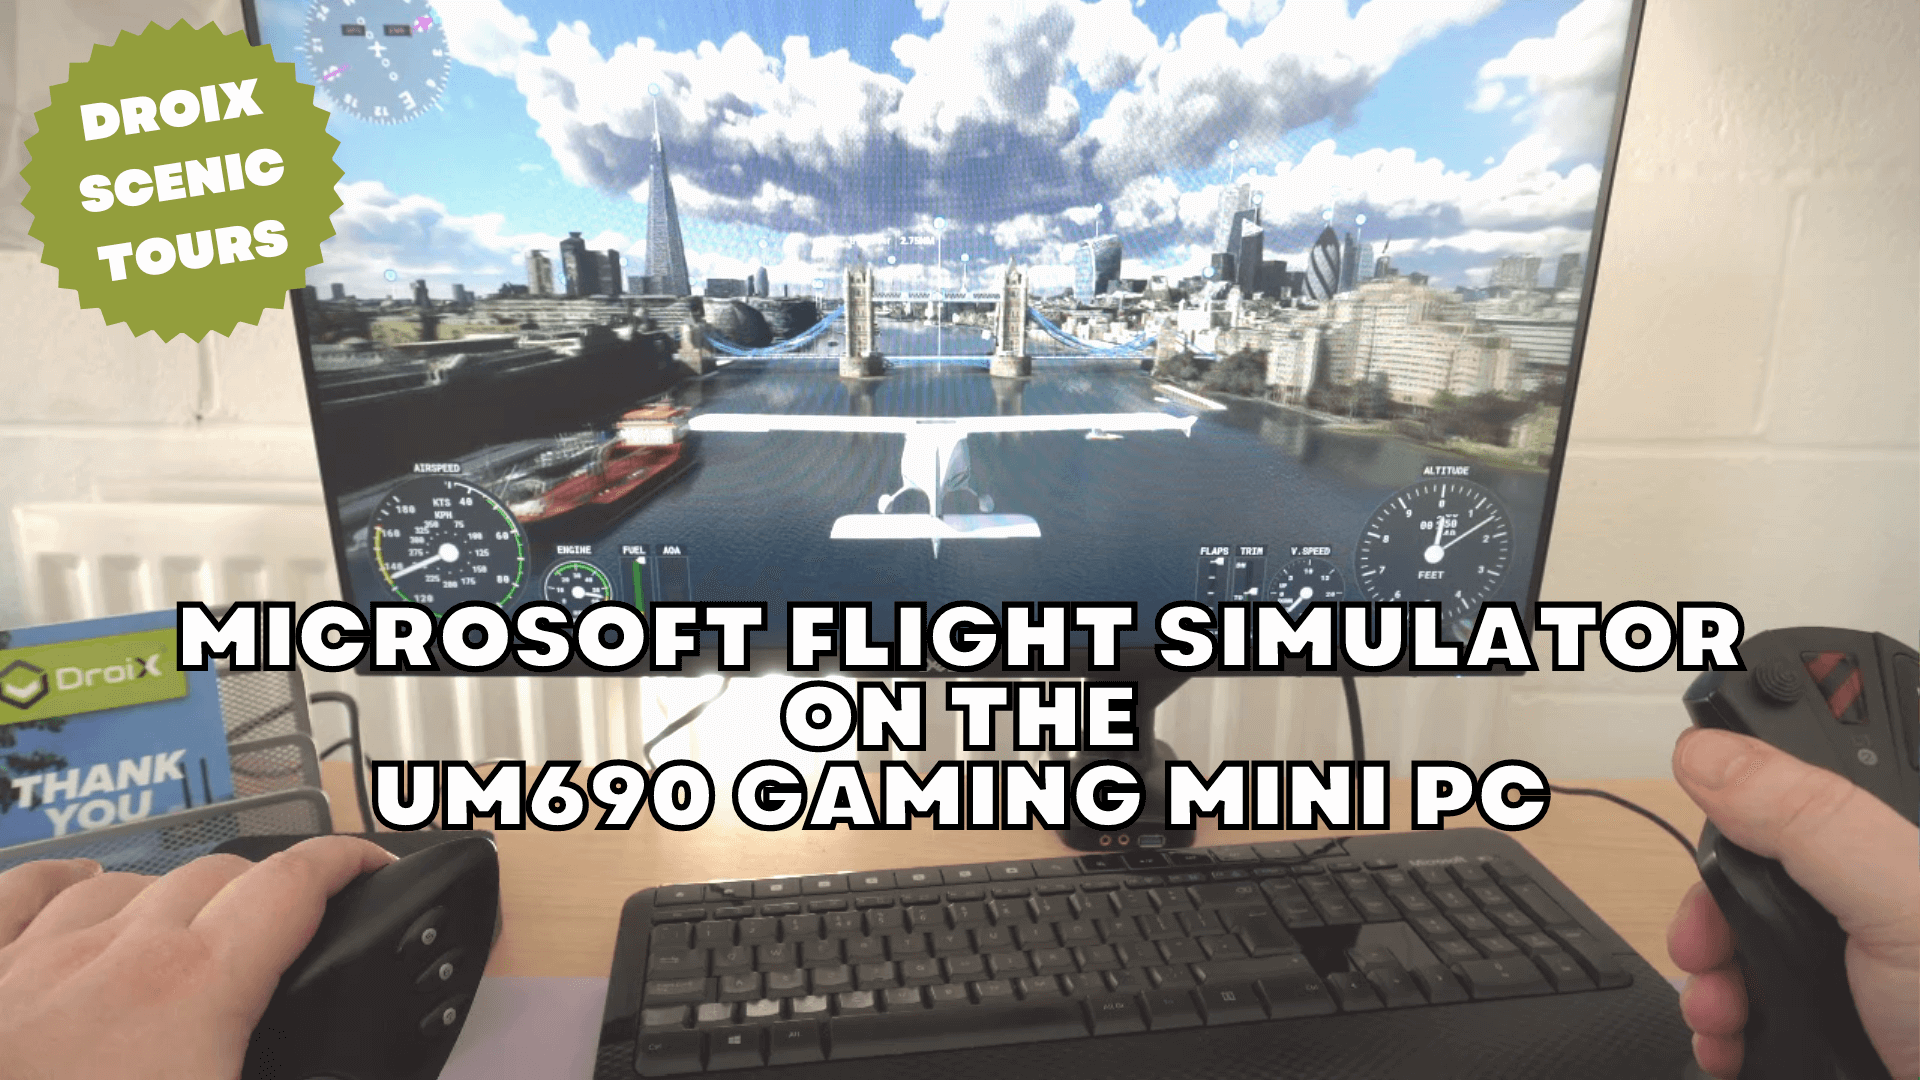 Minisforum UM690 gaming mini PC with Microsoft Flight Simulator